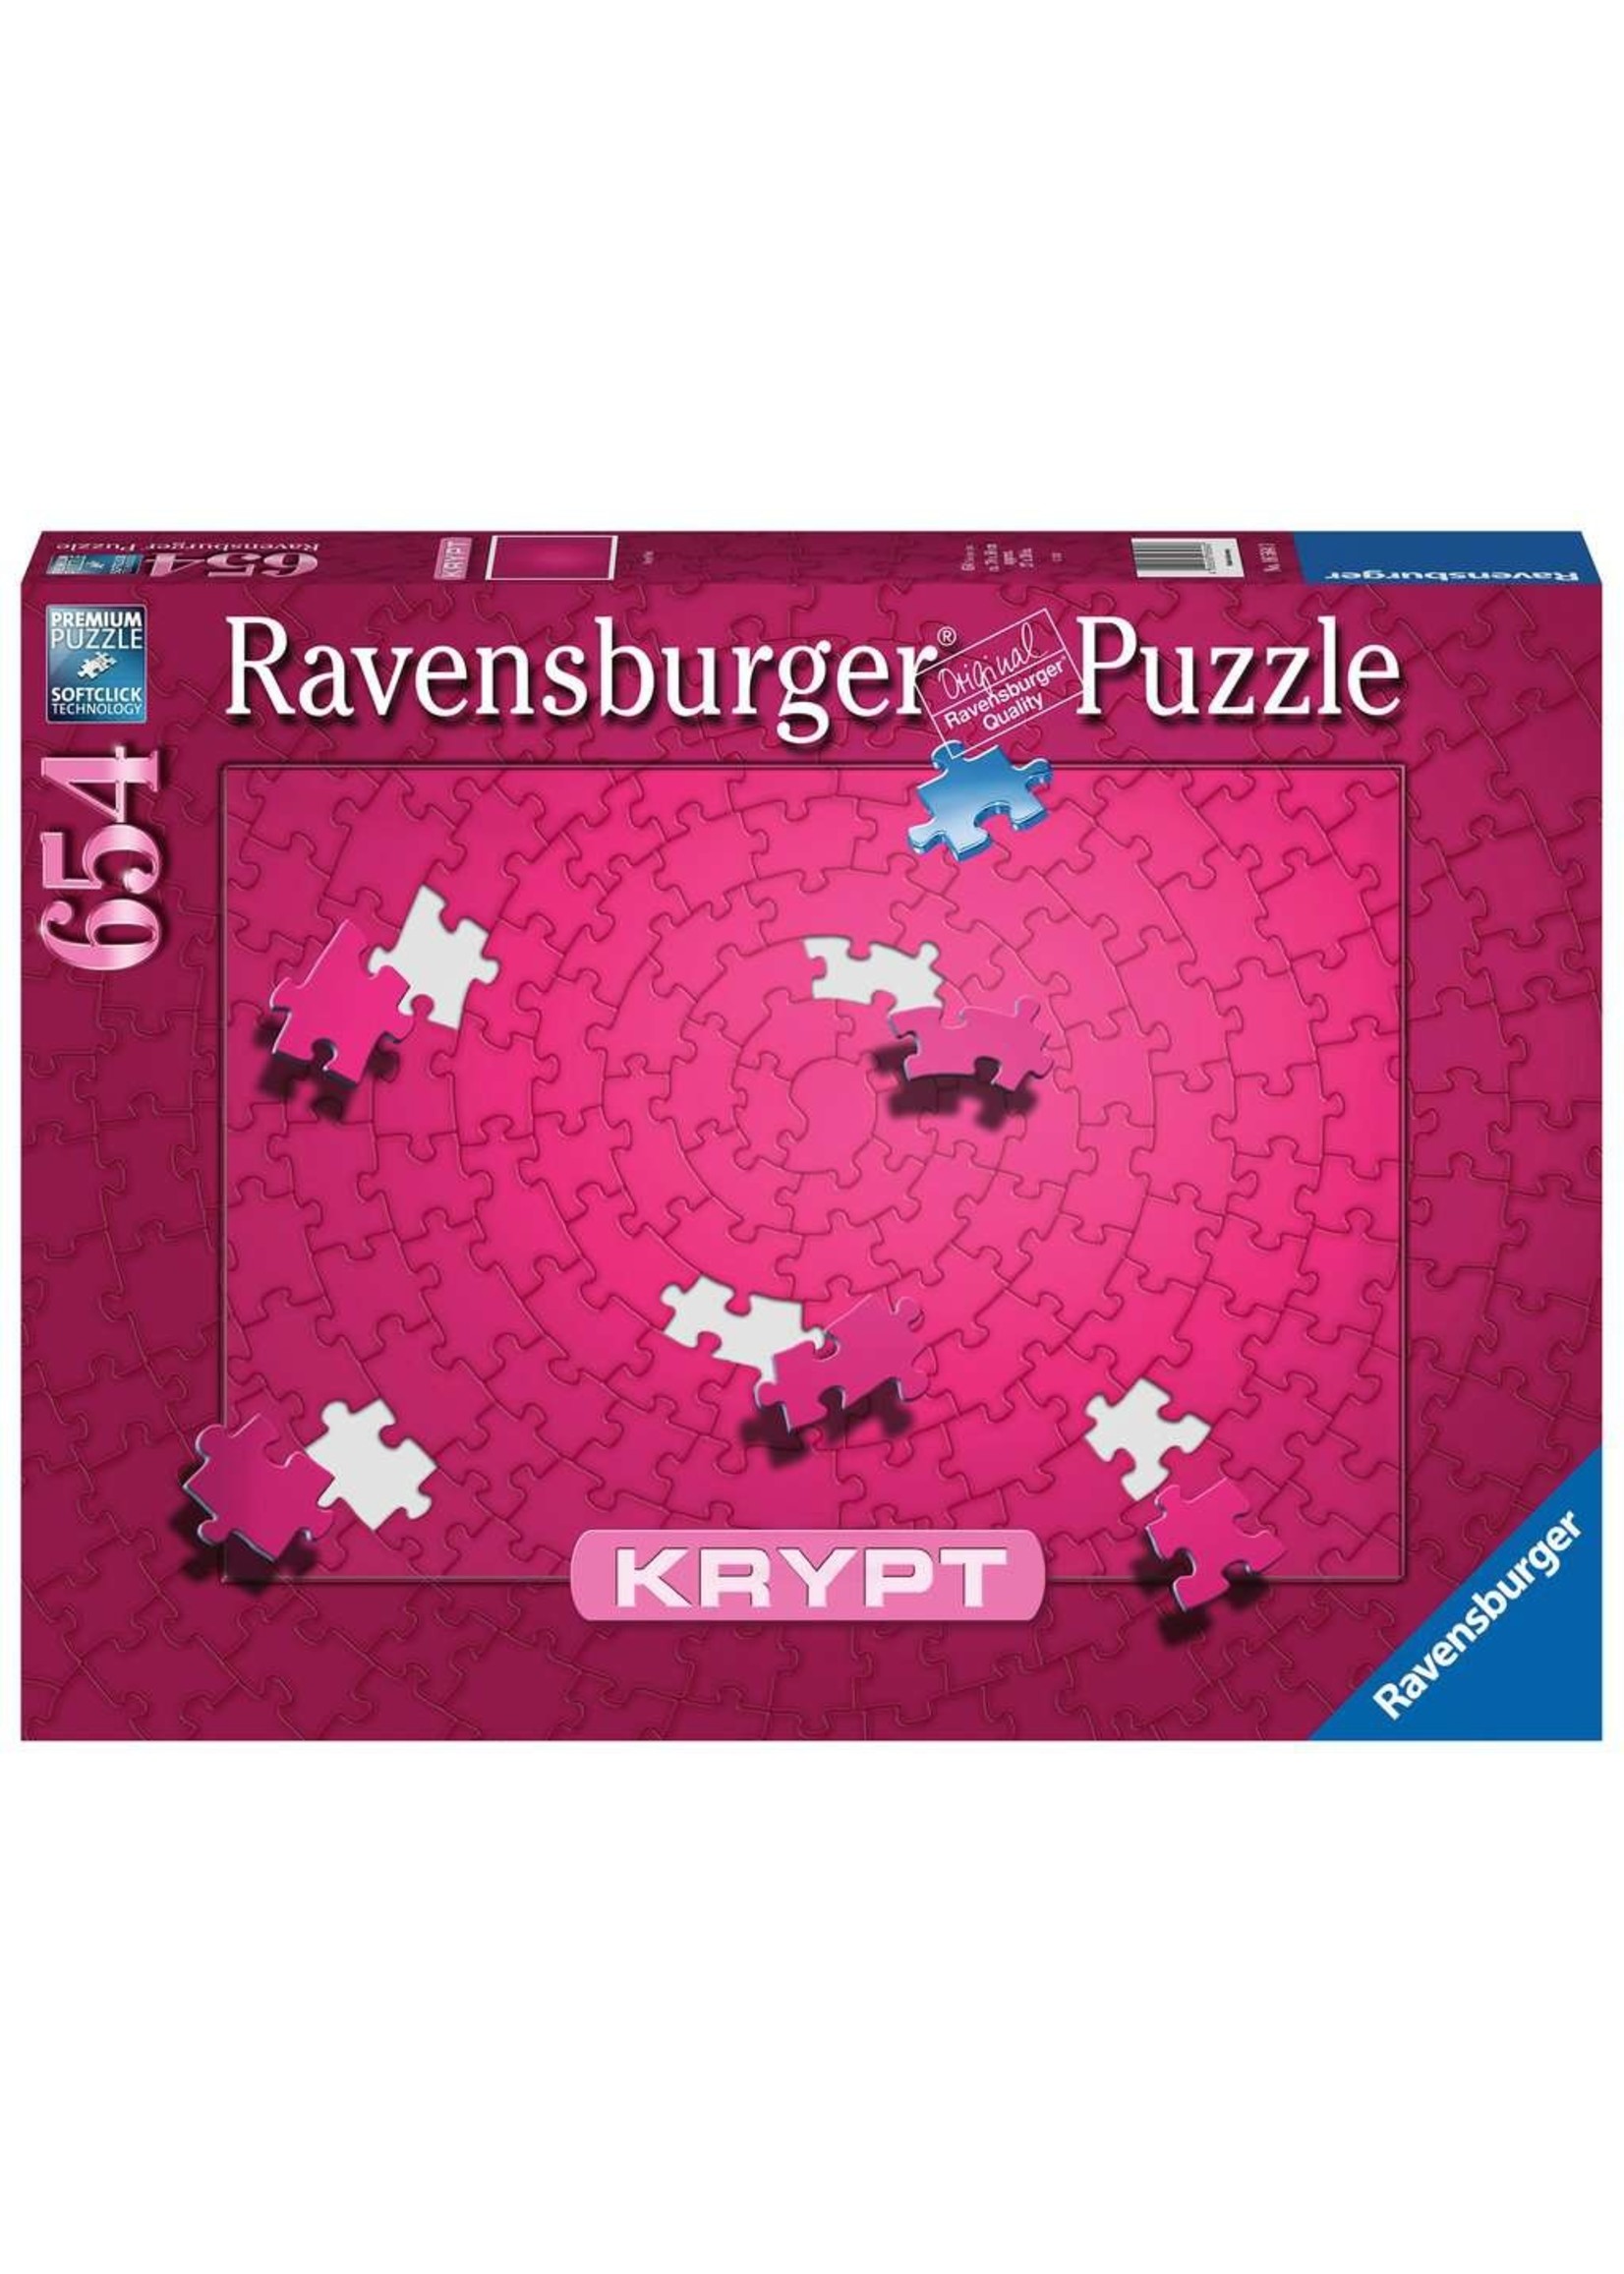 Ravensburger Krypt - Pink - 654 Piece Puzzle